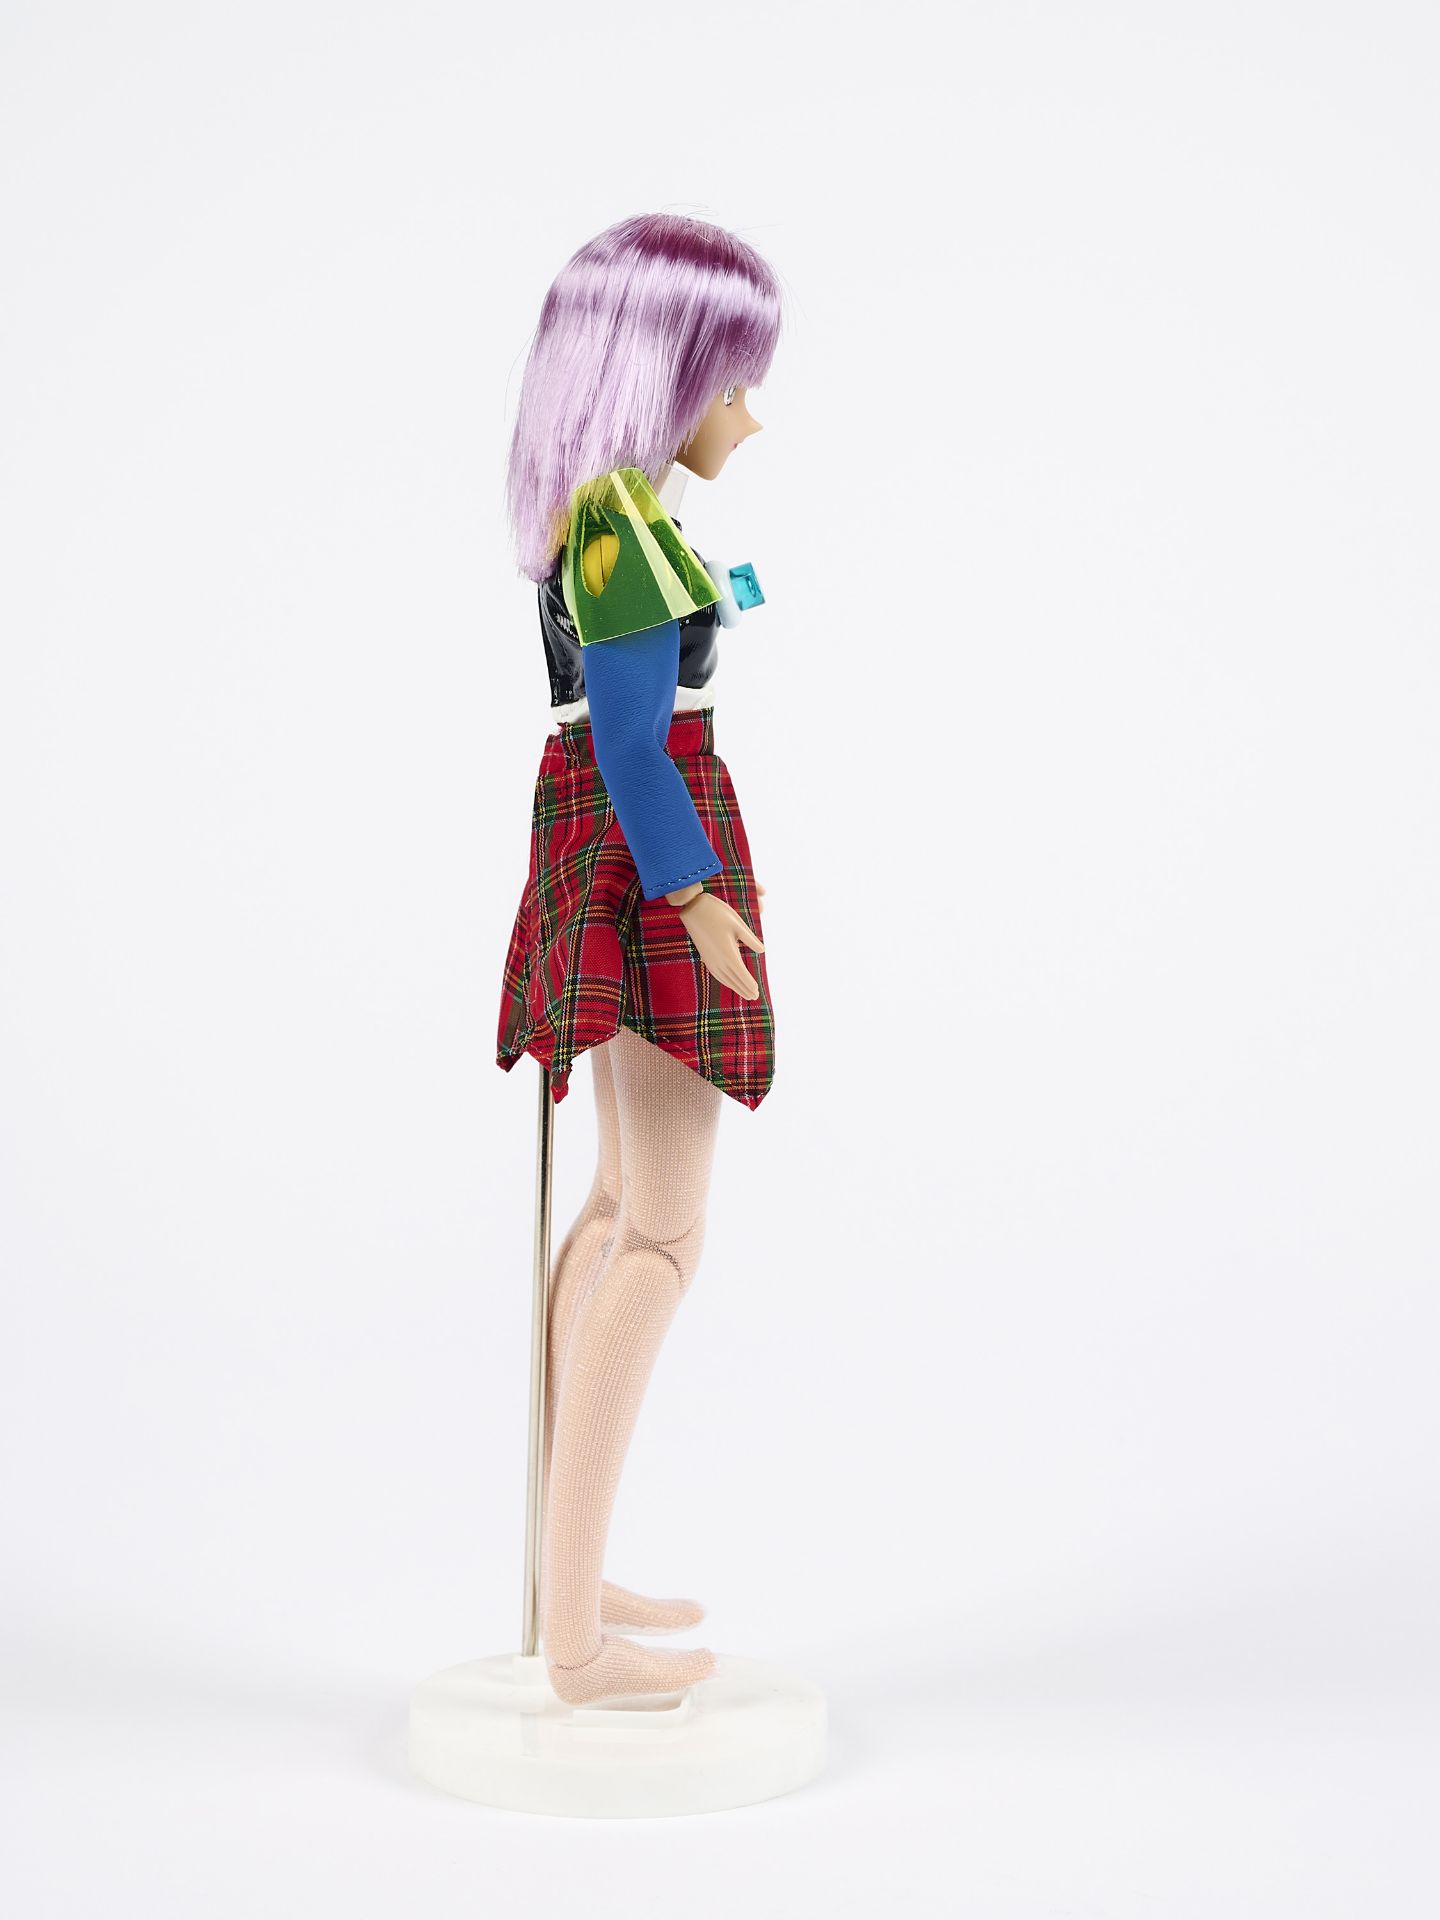 Mariko Mori: Star Doll (für Parkett 54) - Image 4 of 5